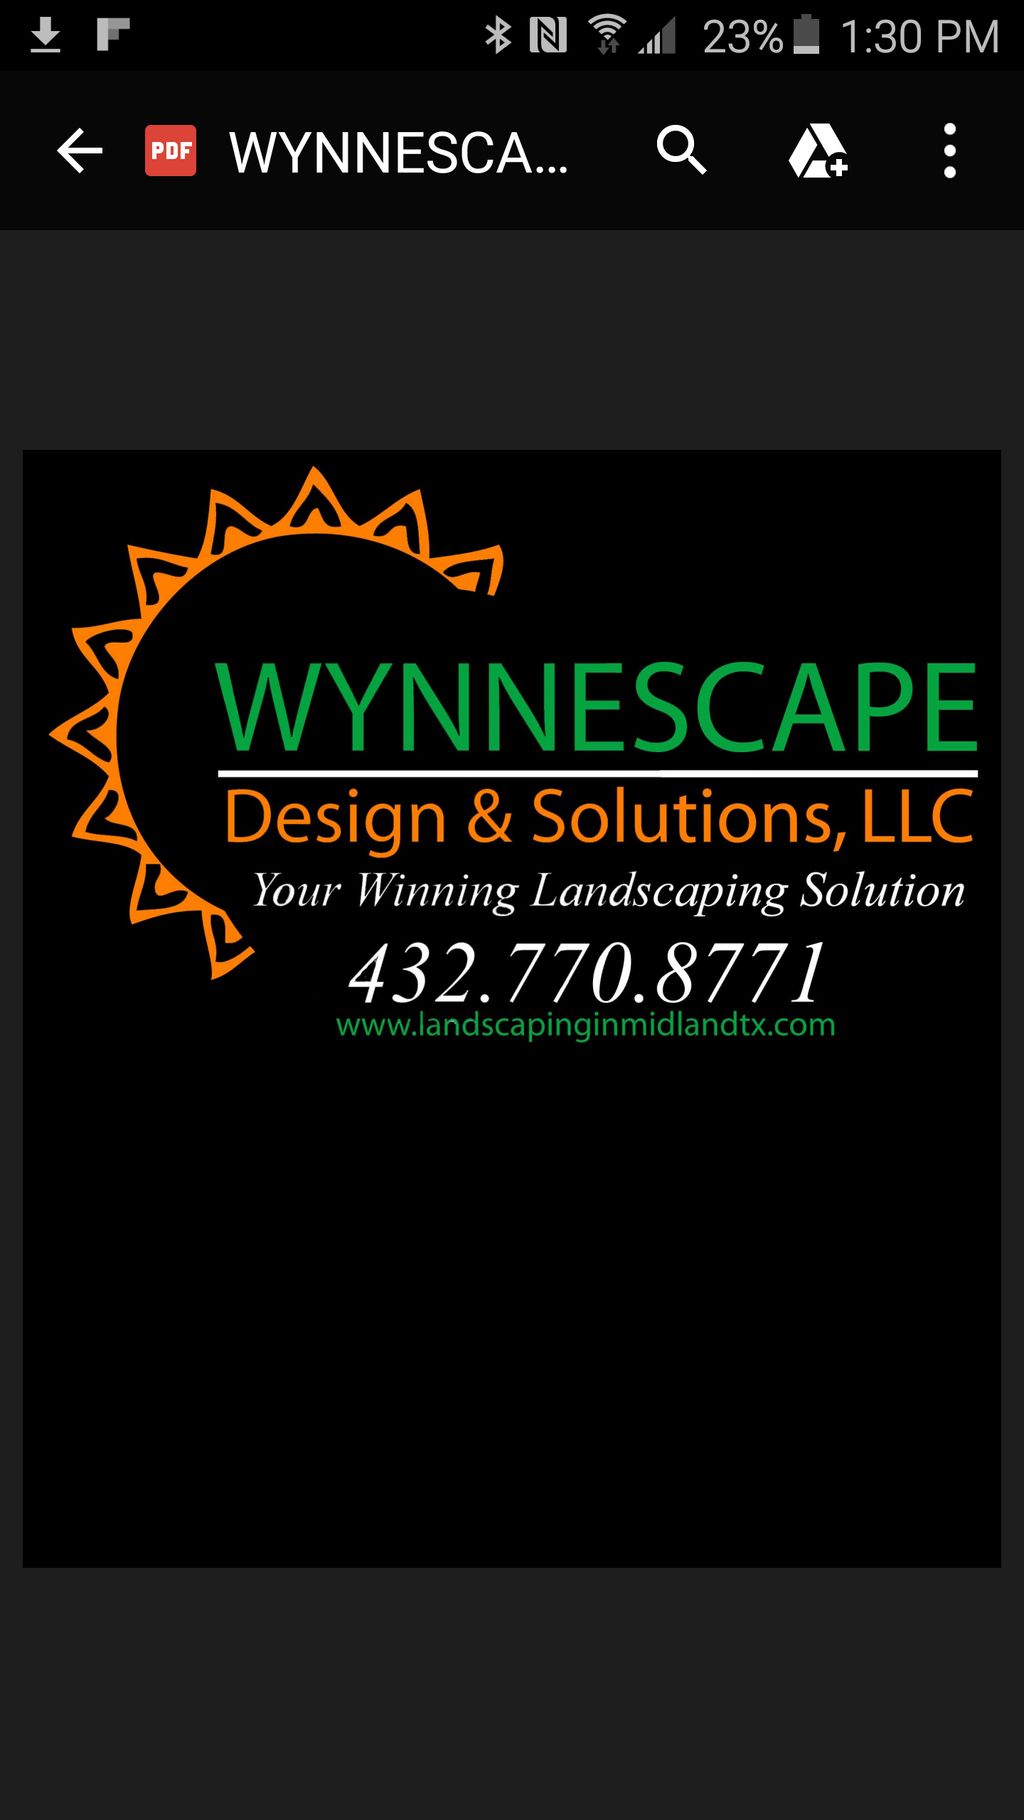 Wynnescape Design & Solutions LLC